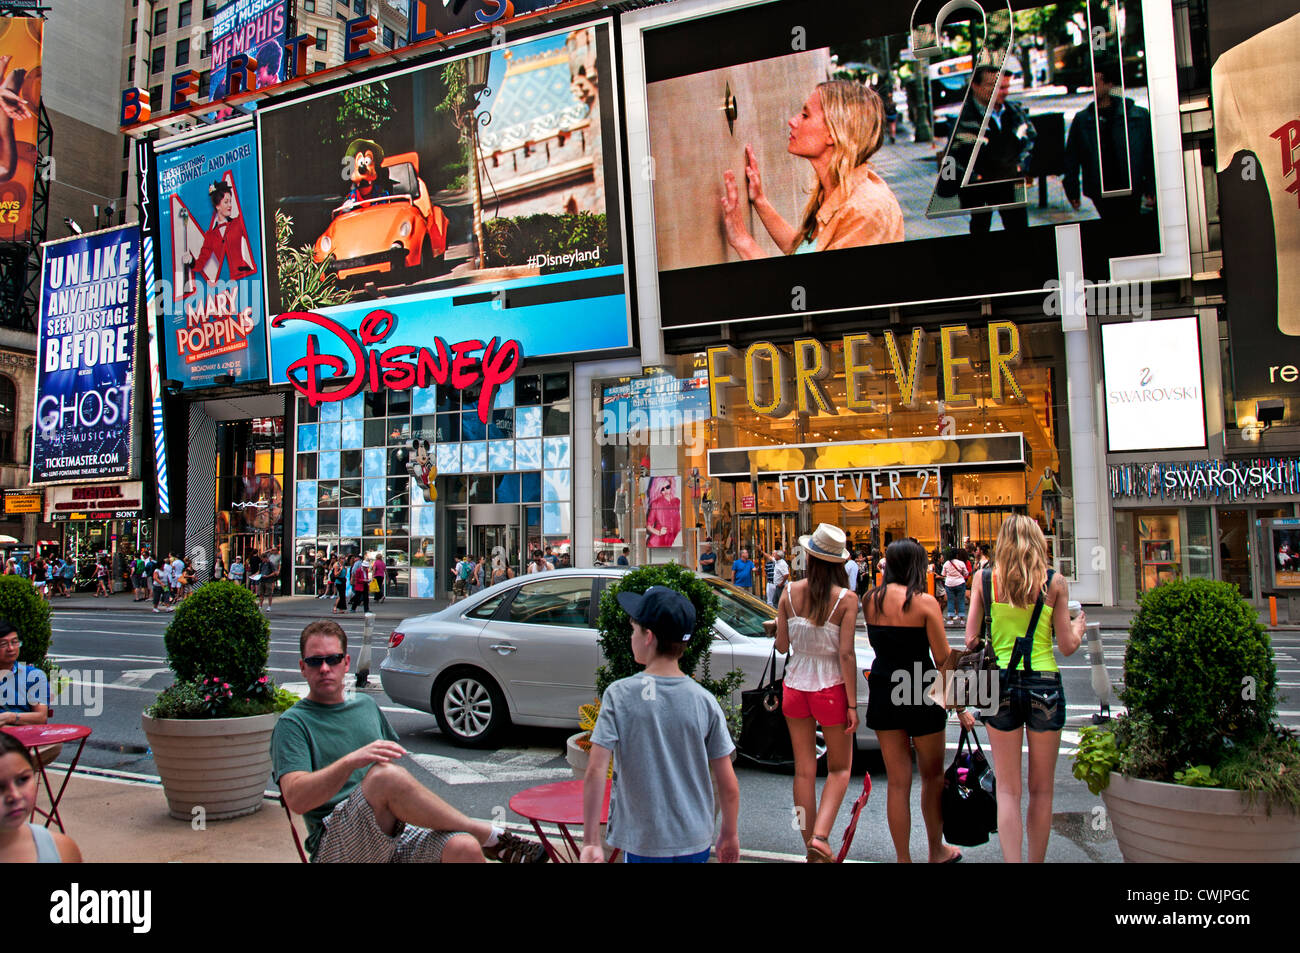 Times Square Broadway New York City Theatre Music, Times Square ist ein Unterhaltungs- und Geschäftsviertel in New York City, USA. Stockfoto